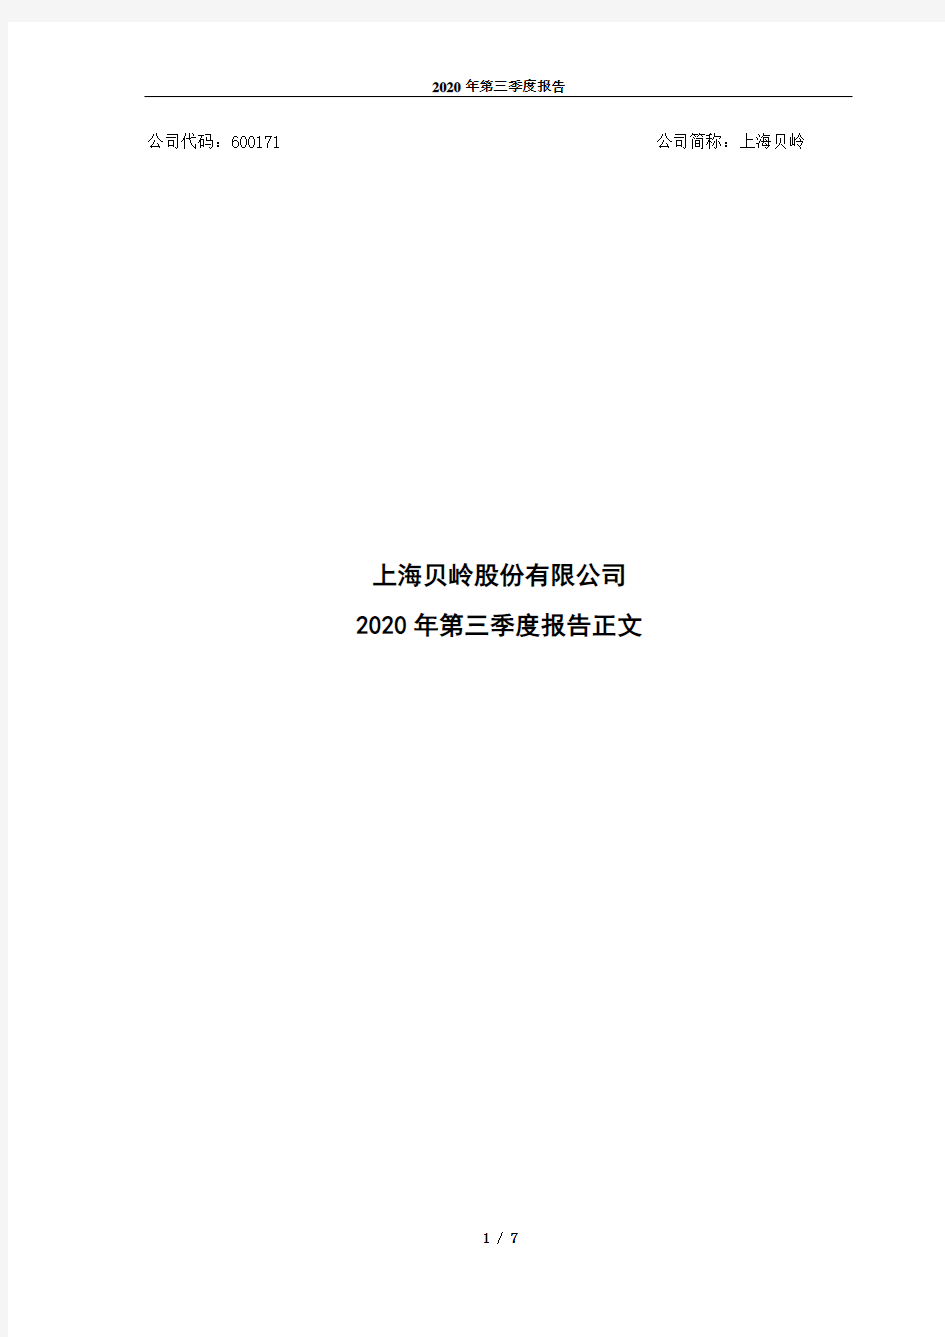 600171上海贝岭2020年第三季度报告正文